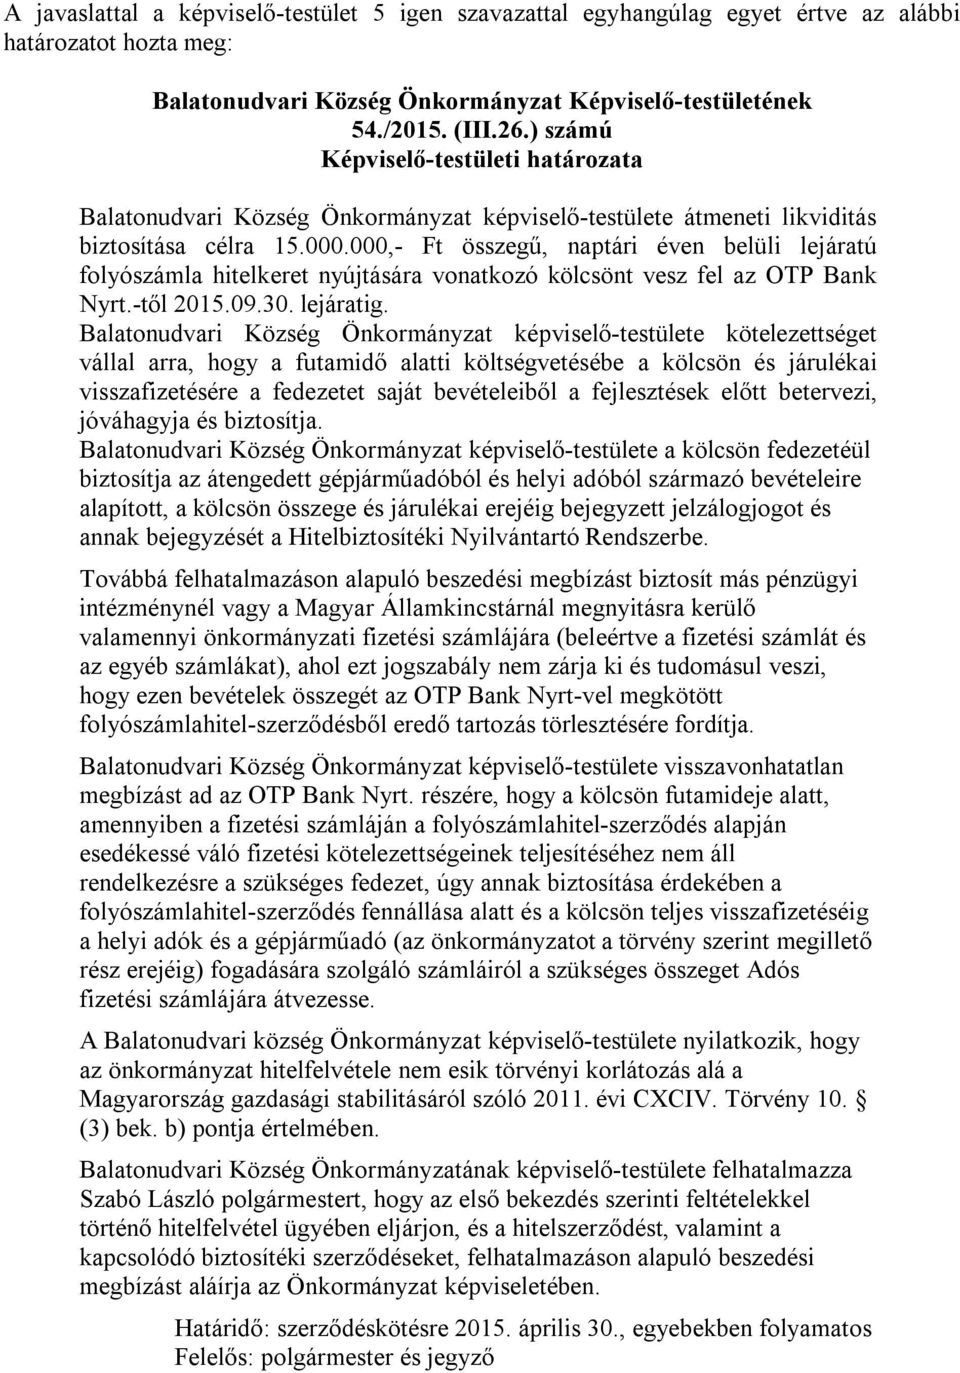 Balatonudvari Község Önkormányzat képviselő-testülete kötelezettséget vállal arra, hogy a futamidő alatti költségvetésébe a kölcsön és járulékai visszafizetésére a fedezetet saját bevételeiből a